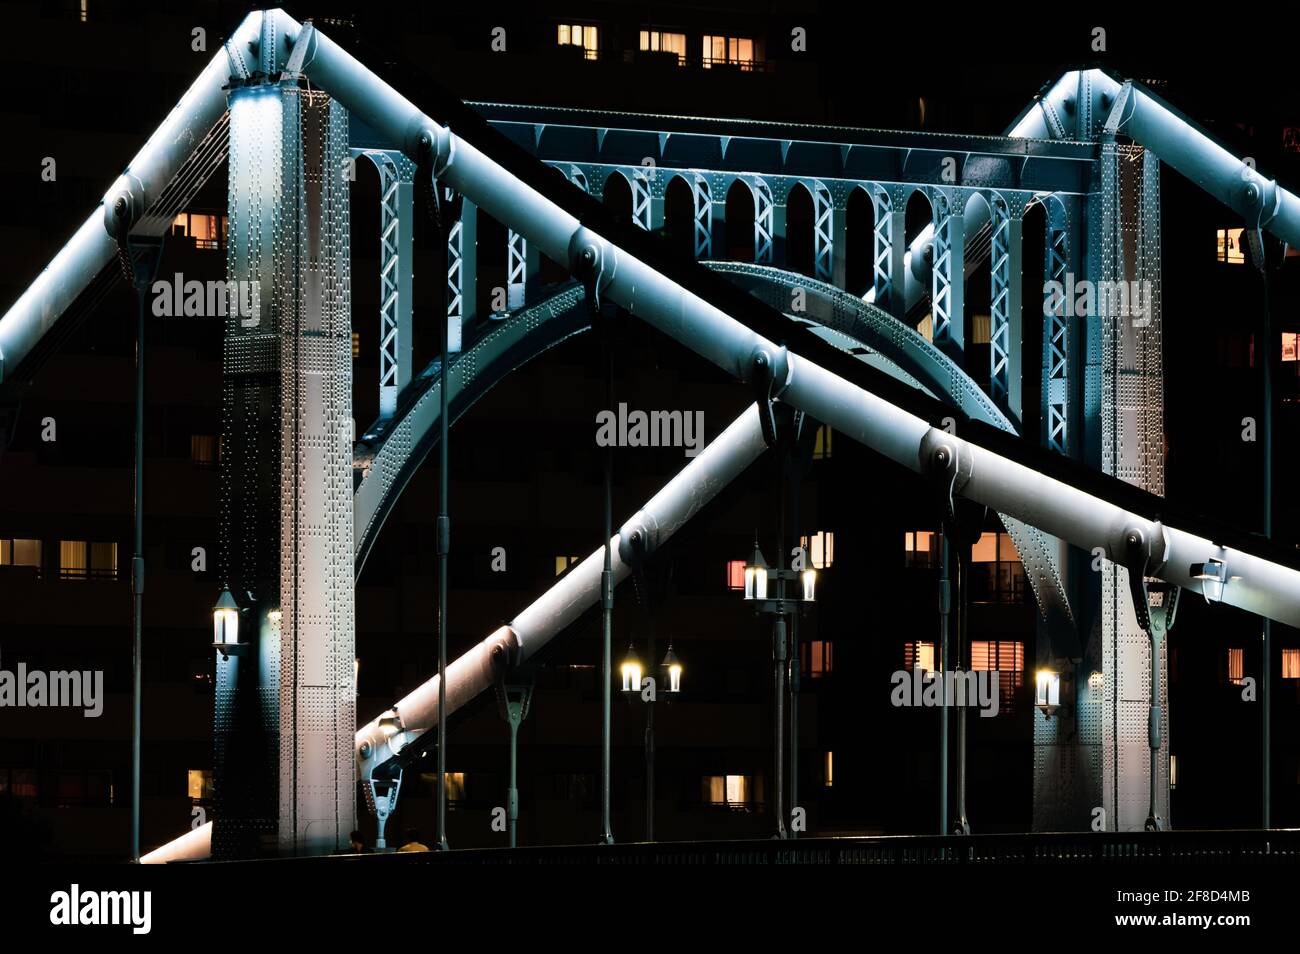 Die kurze Belichtung der Kiyosu-Brücke im dunklen Modus wirkt bedrohlicher als die Langzeitbelichtung. Stockfoto